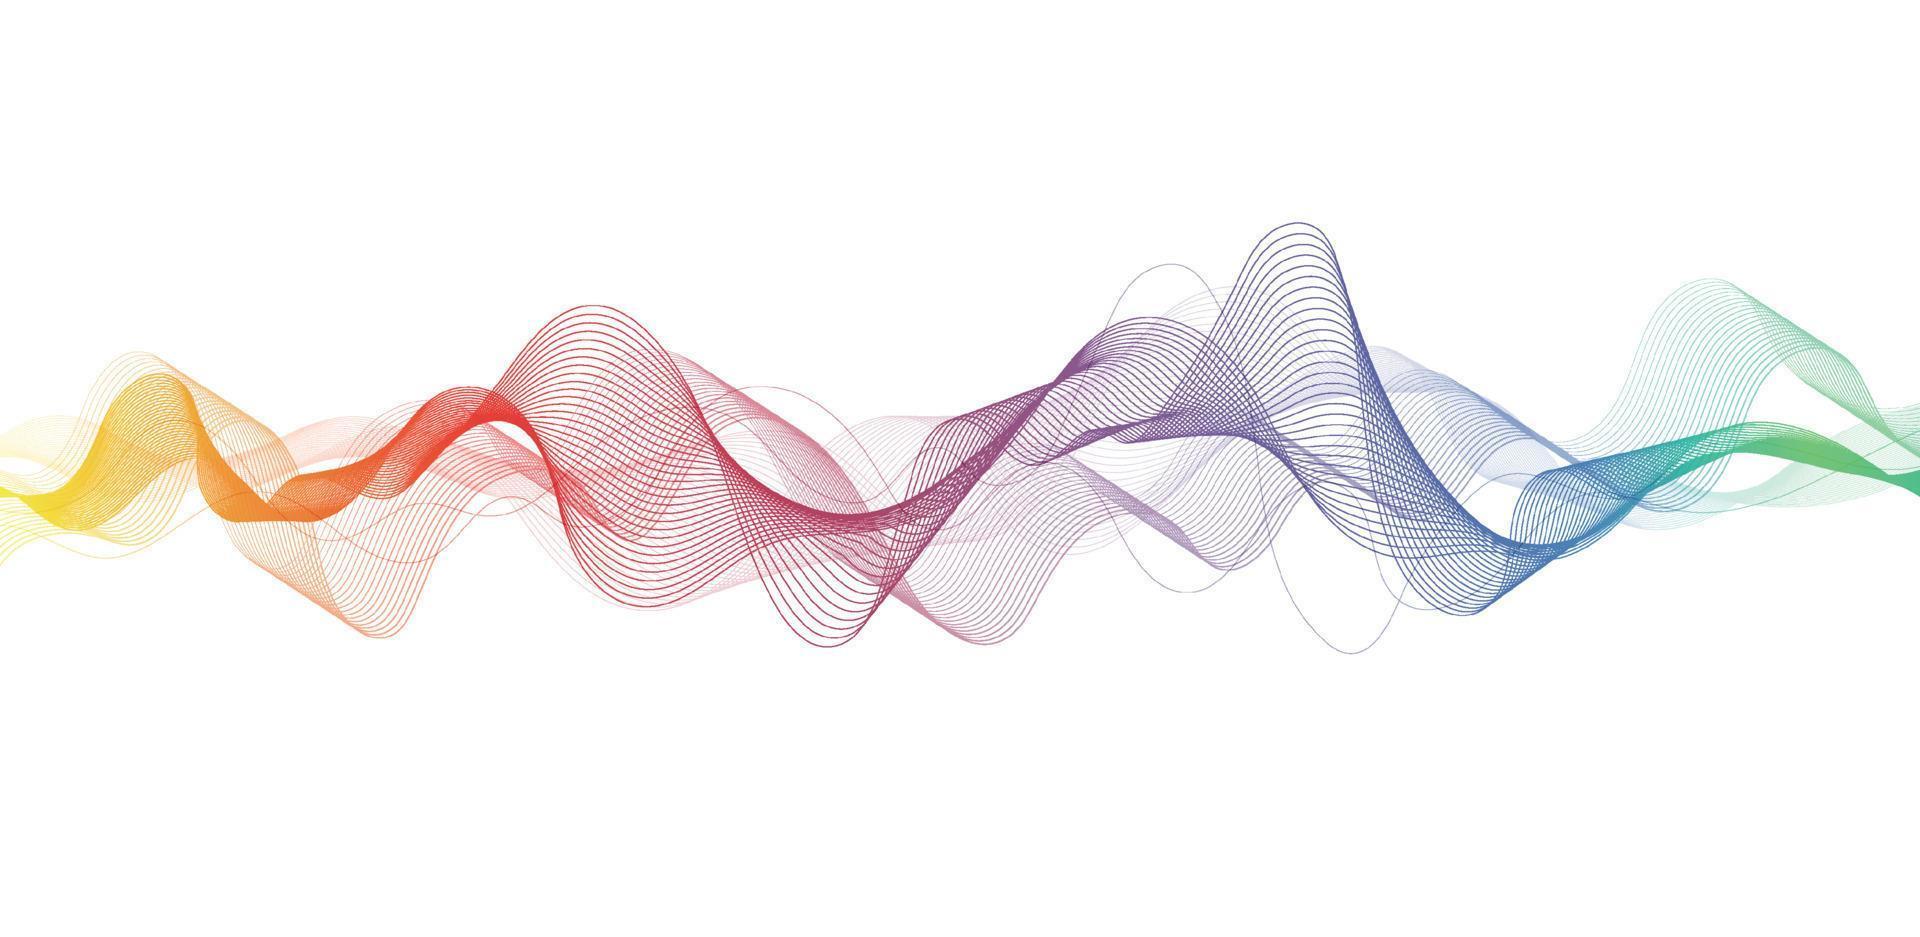 linhas de onda coloridas abstratas sobre fundo branco para elementos na apresentação de negócios de conceito, folheto, panfleto, ciência, tecnologia. ilustração vetorial vetor